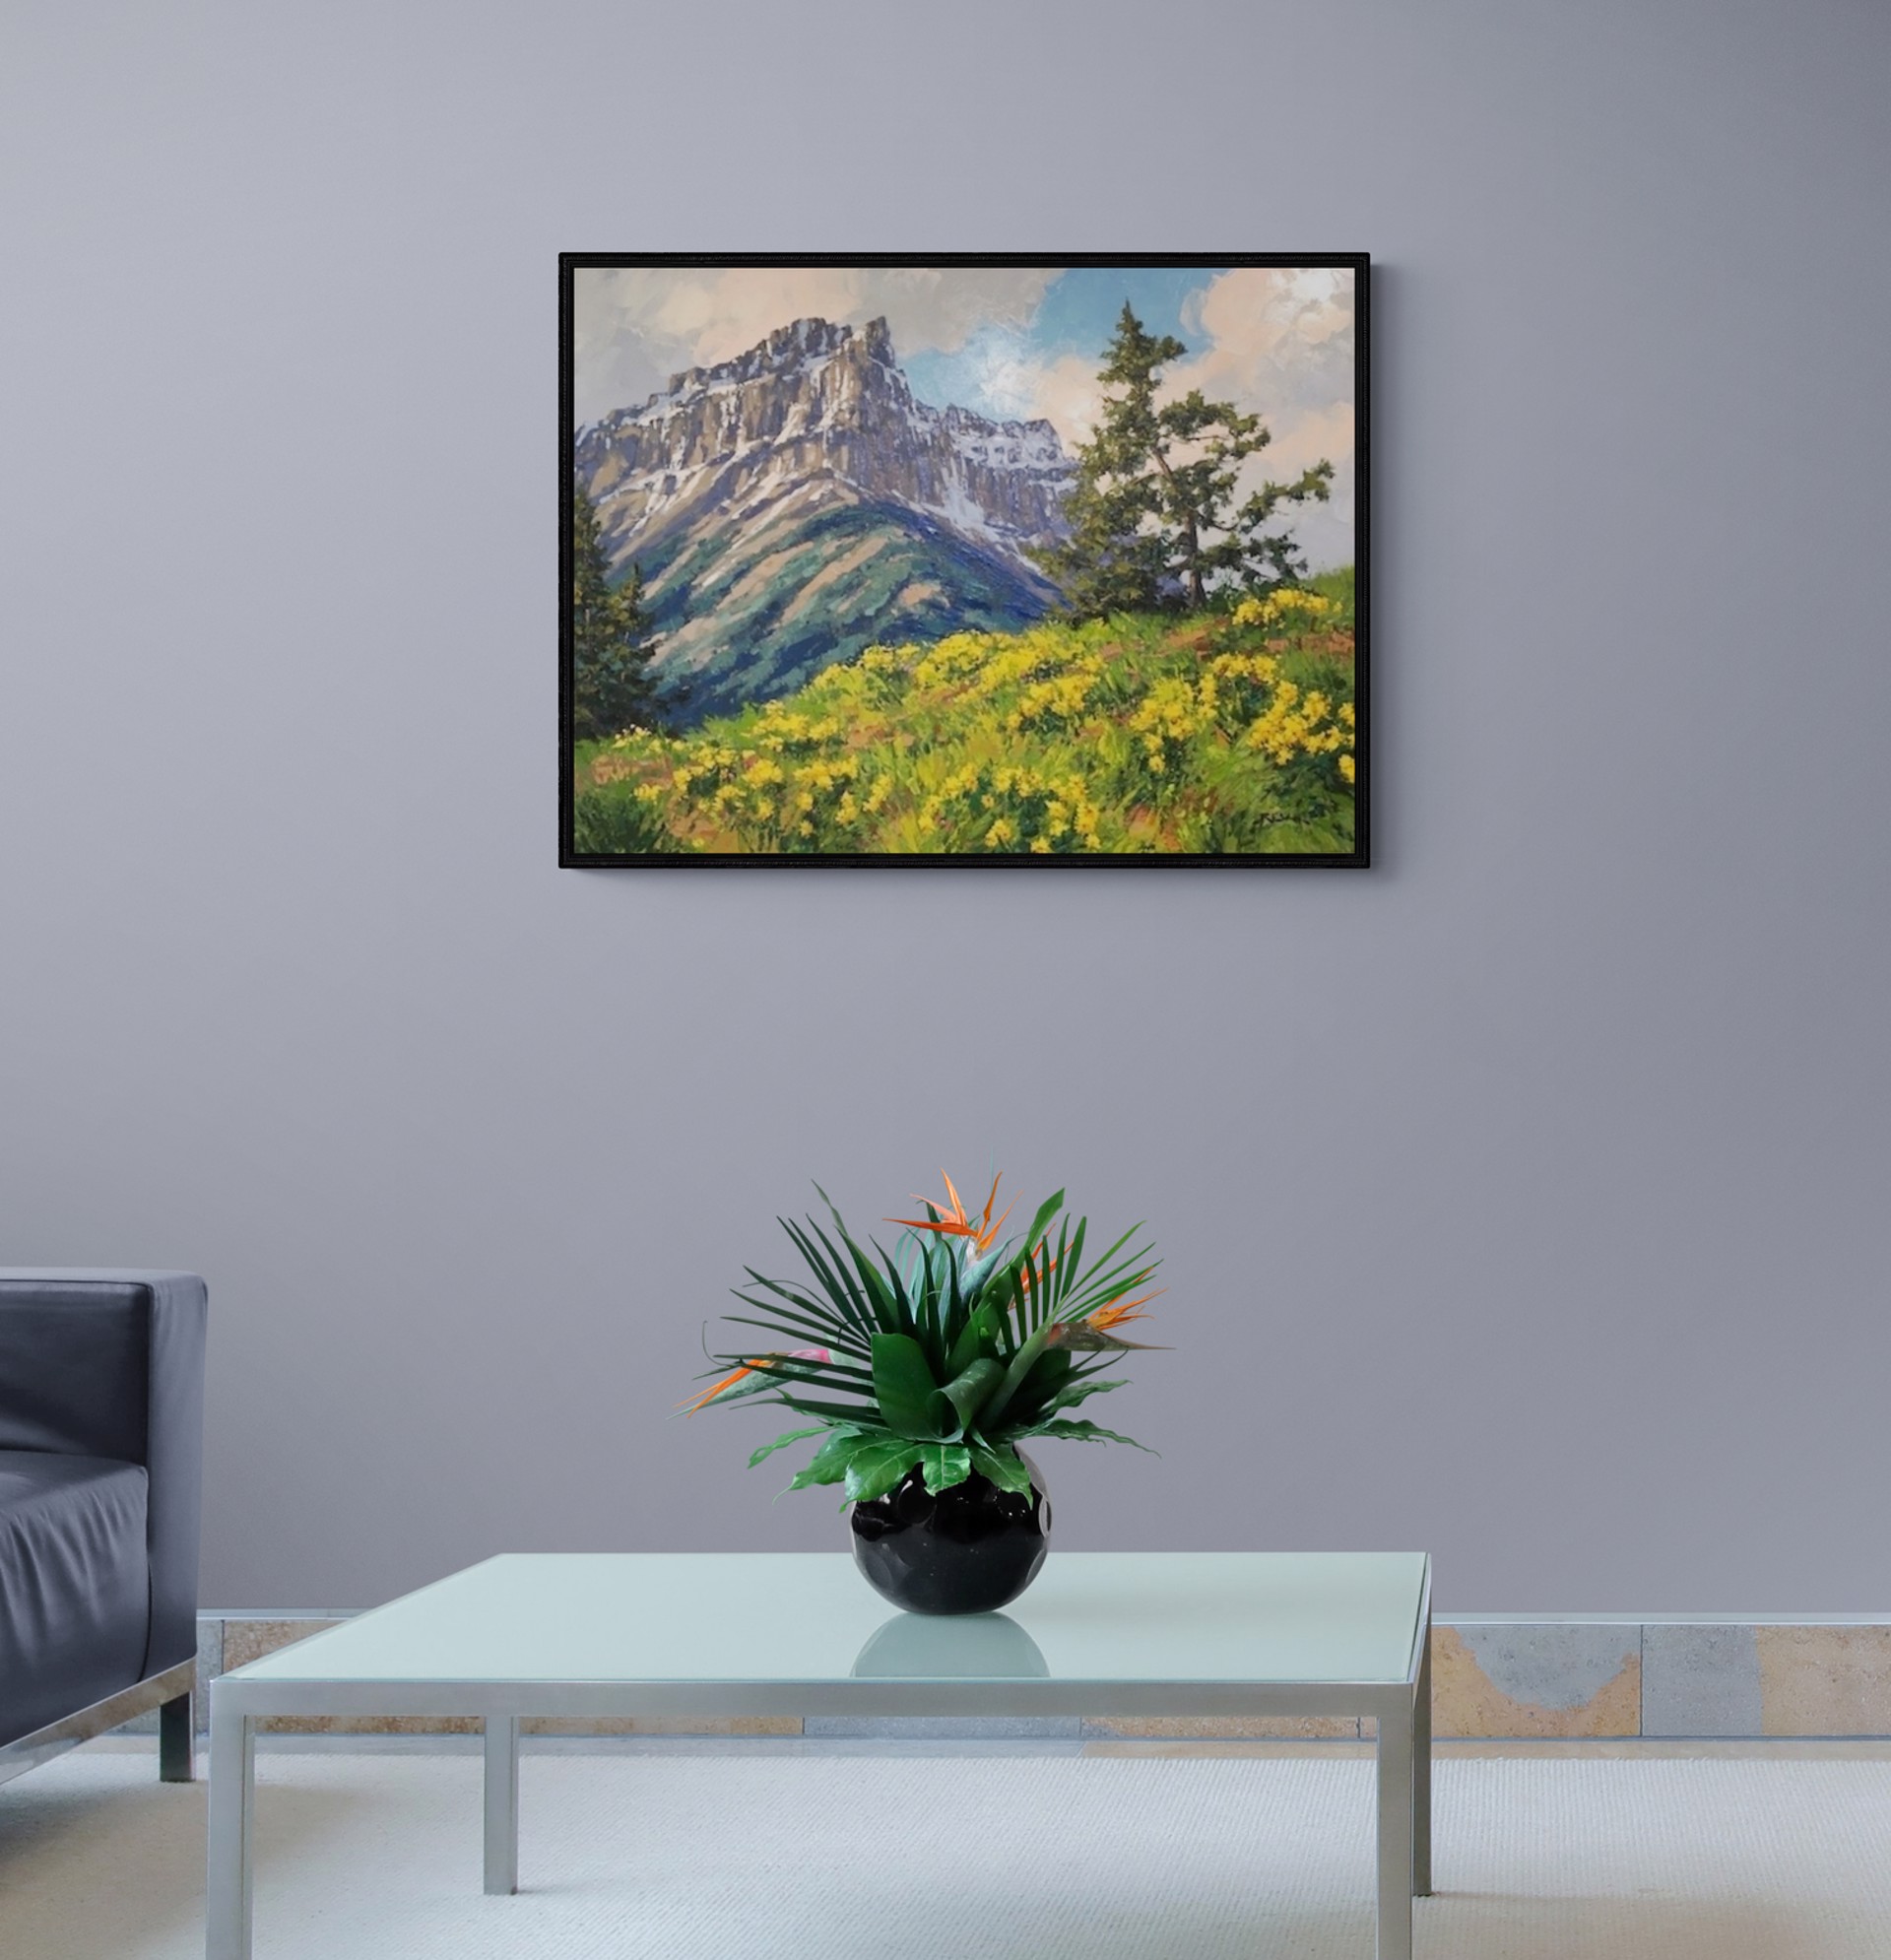 Anderson Peak by Robert E Wood